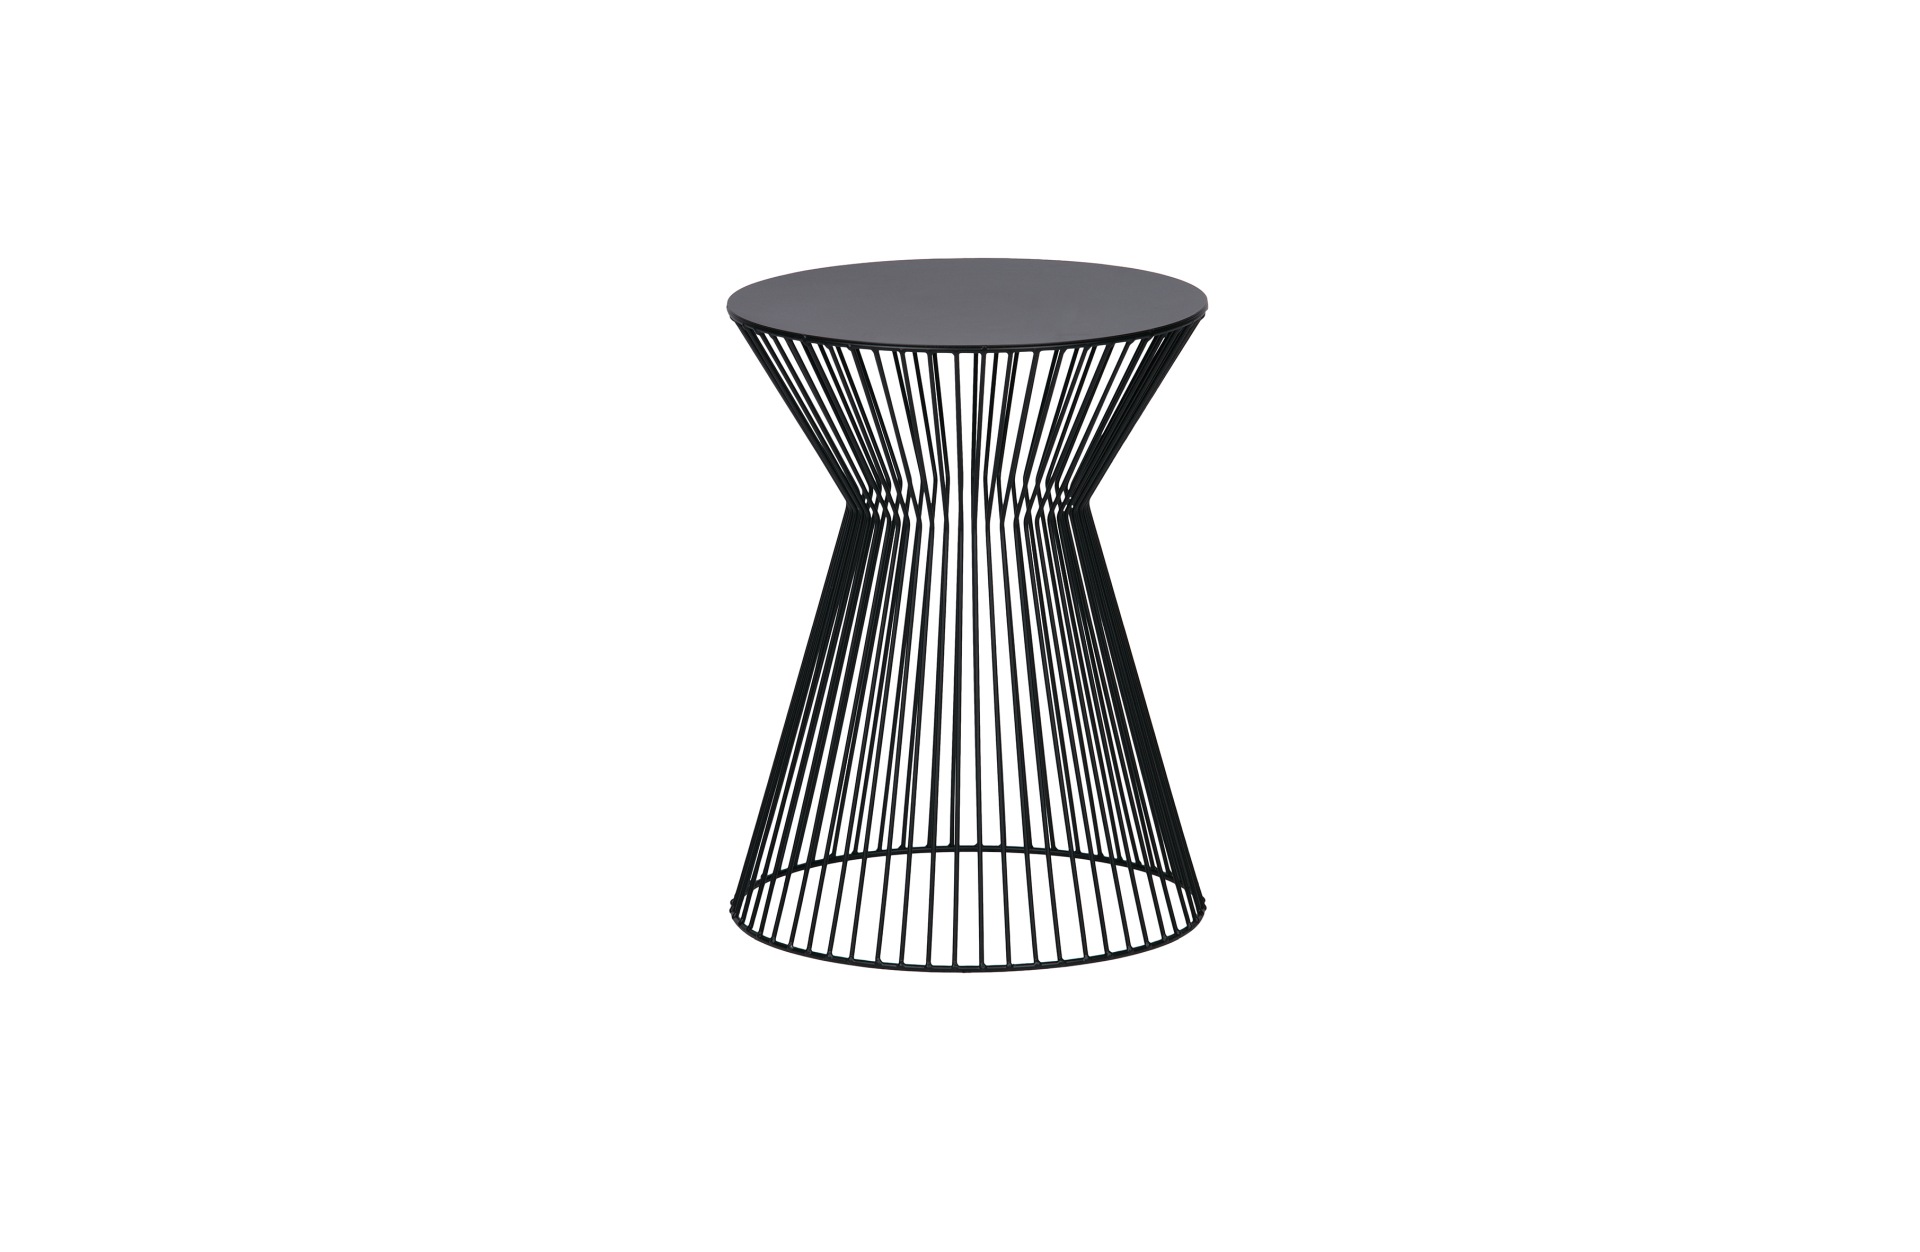 Der Beistelltisch Suus wurde aus Metall gefertigt, welches einen schwarzen Farbton besitzt. Der Tisch überzeugt mit seinem modernen Design.